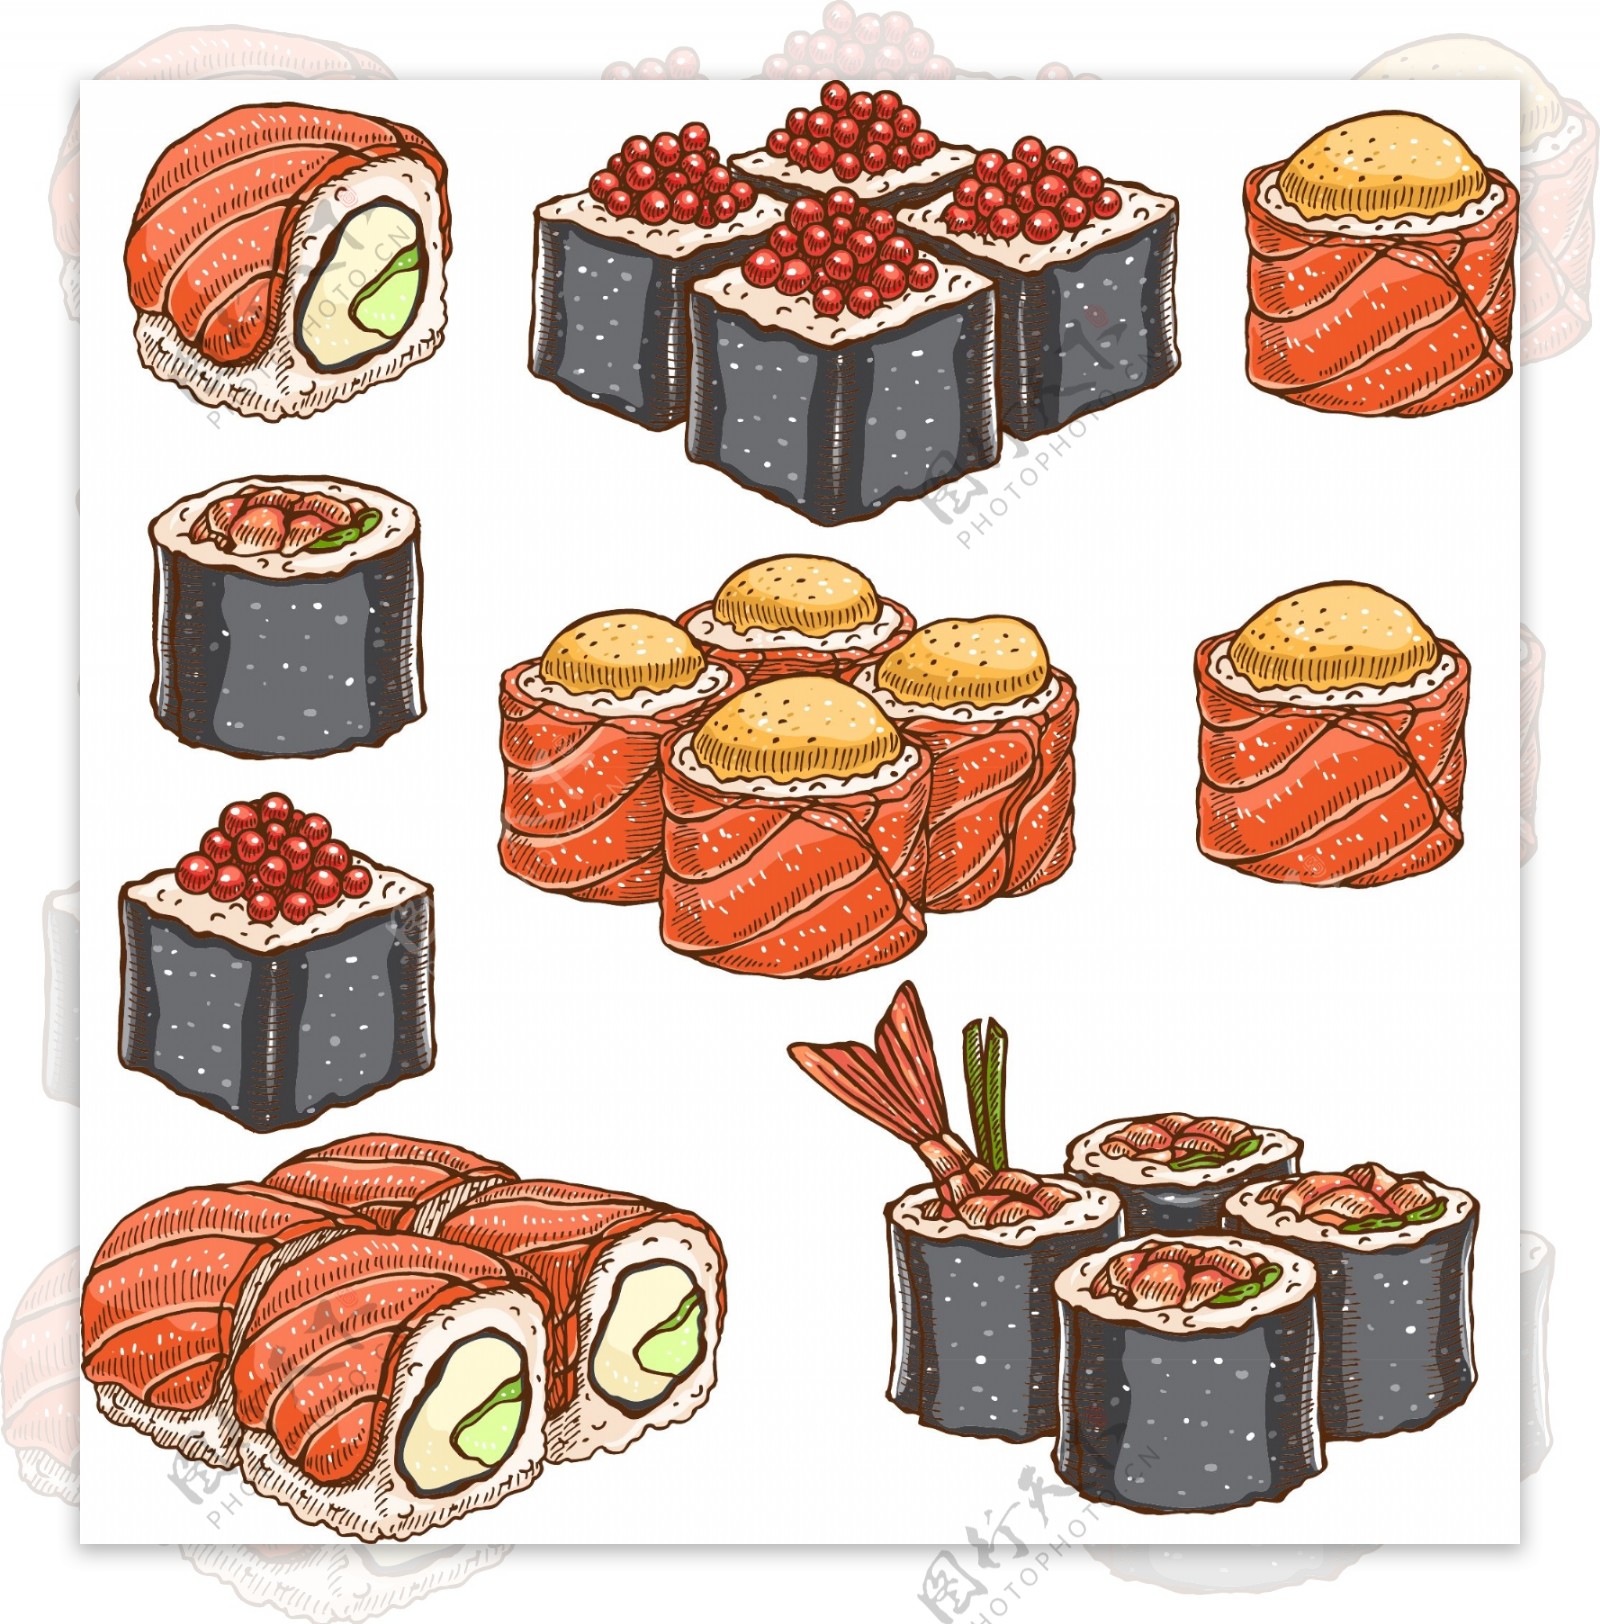 寿司套餐素材图片下载-素材编号03208164-素材天下图库